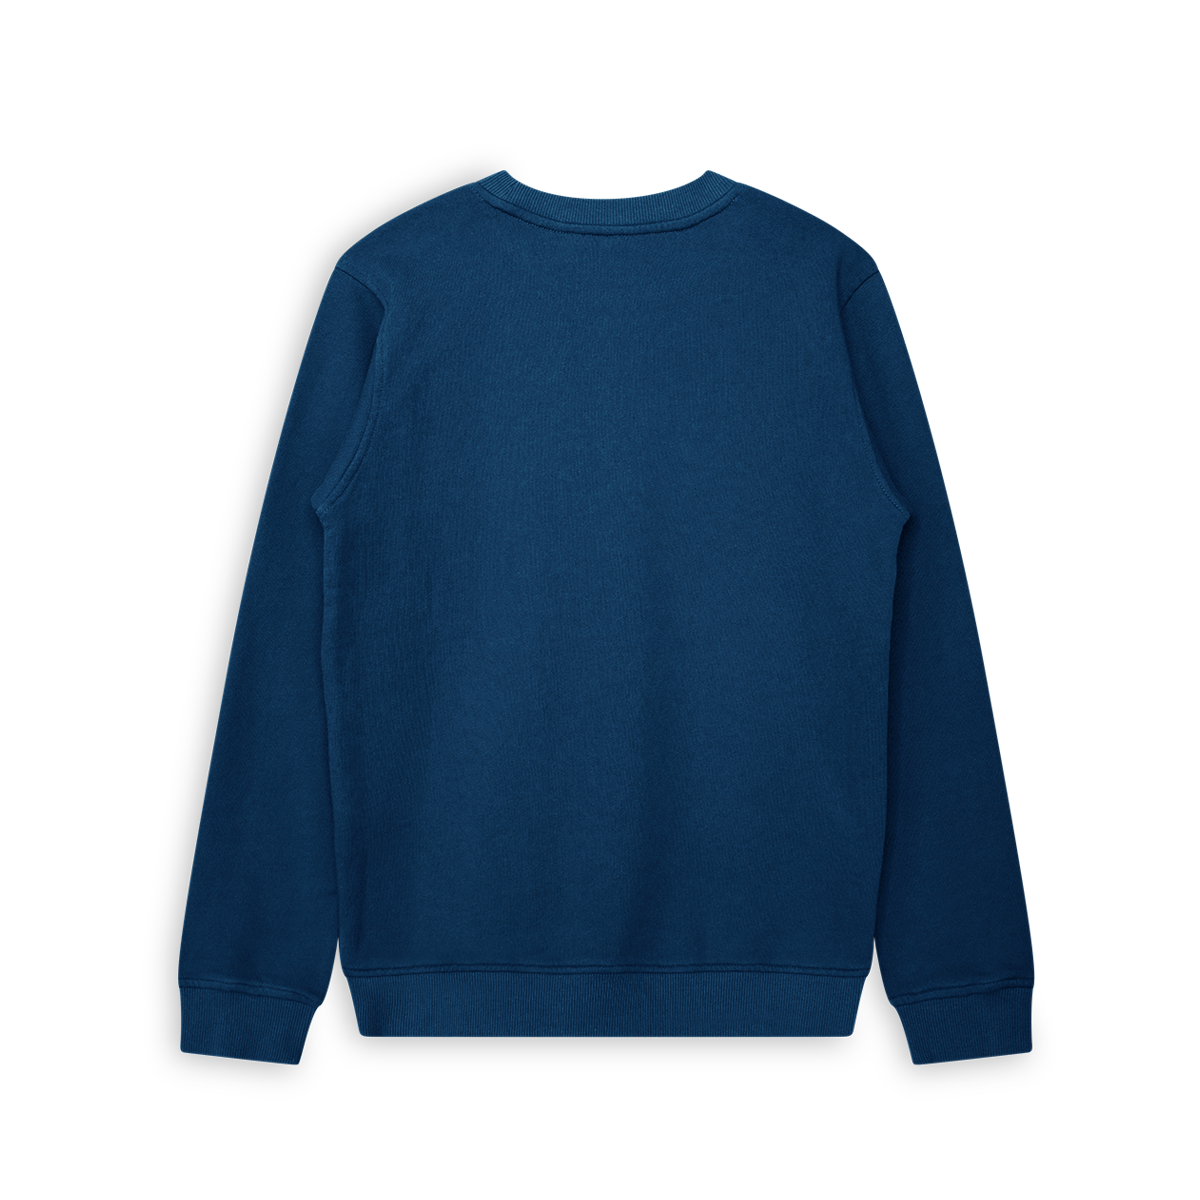 717 Sweater Worker Blue